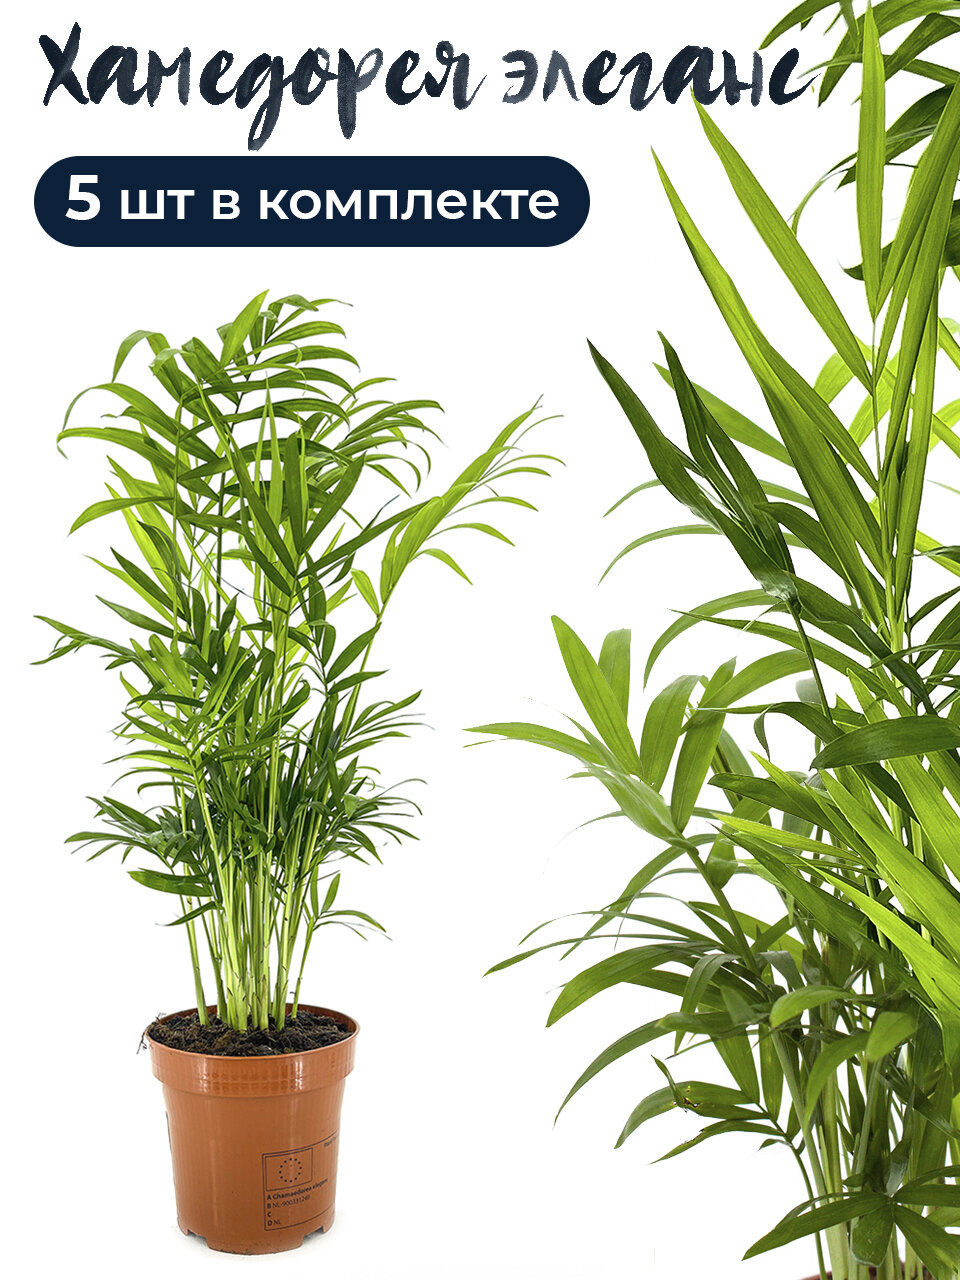 Комплект 5 штук Хамедорея элеганс 9 дм высота 30-35 см комнатное растение